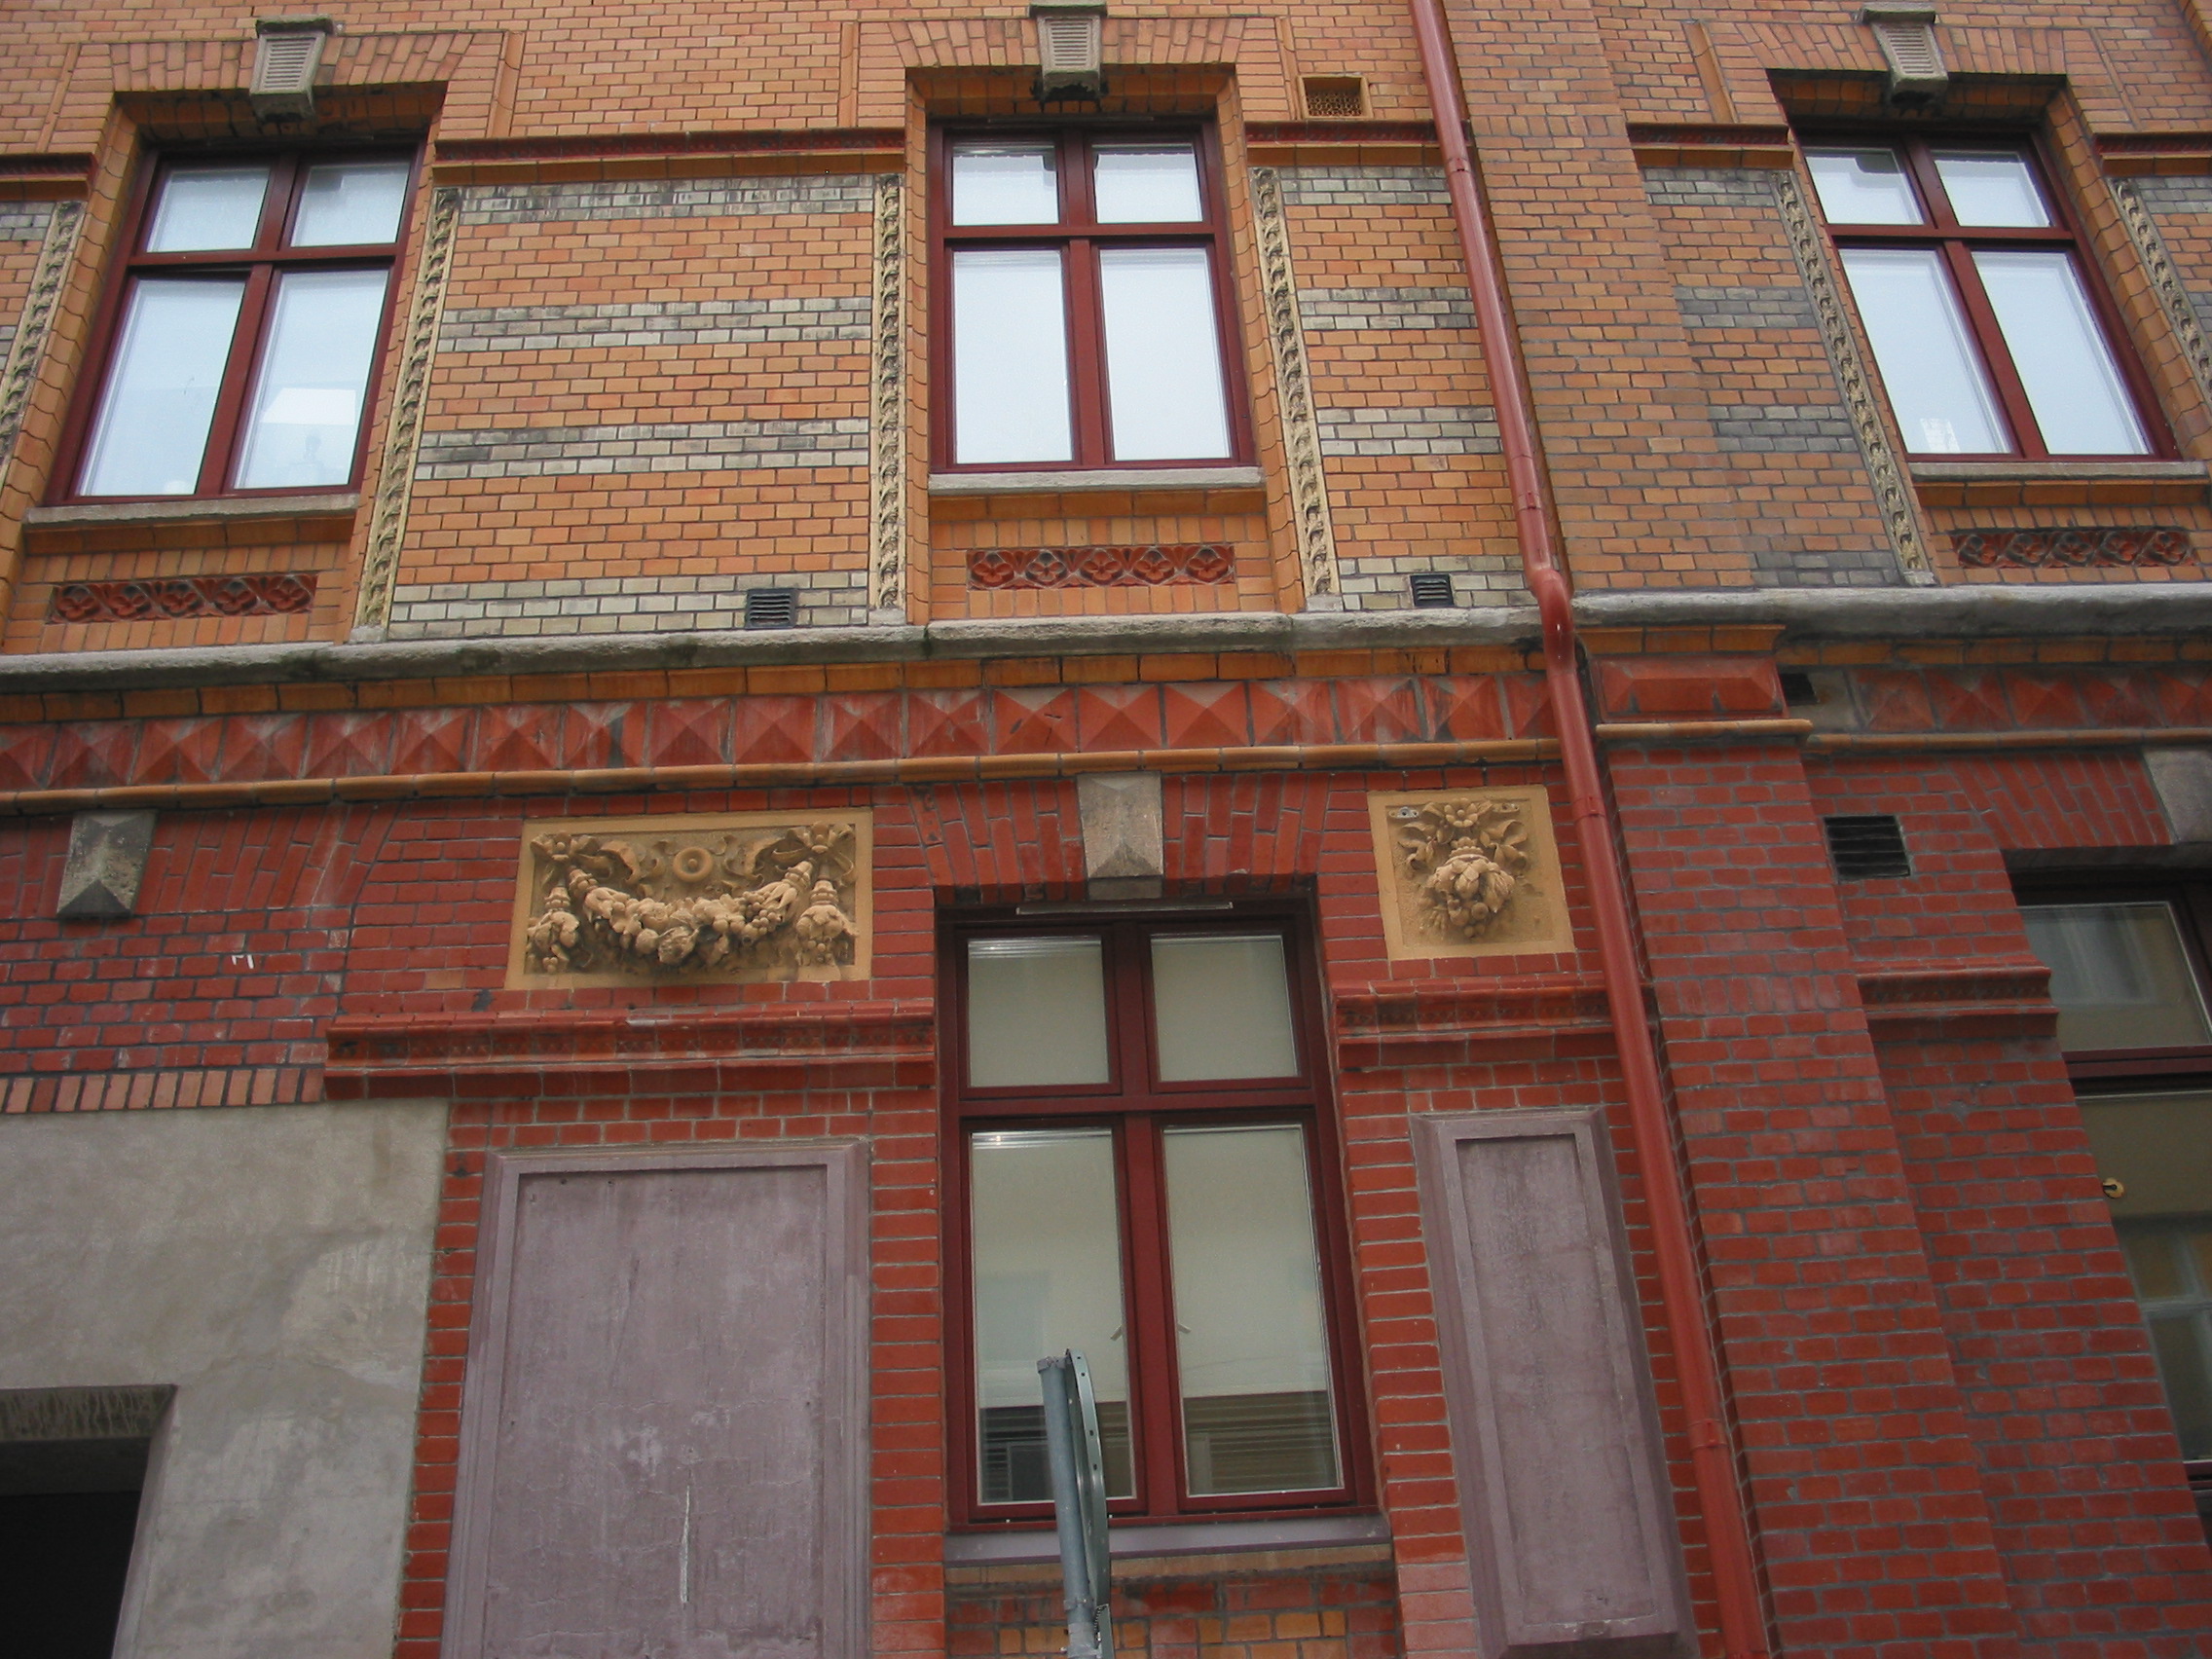 Detalj av Adlers fasad för frukthandlare Mühlenbocks byggnad med magasin och kontor (uppförd 1885). Festongerna med fruktklasar betonar den ursprungliga verksamheten. Handelstidningen tog över hela kvarteret i början av 1900-talet.